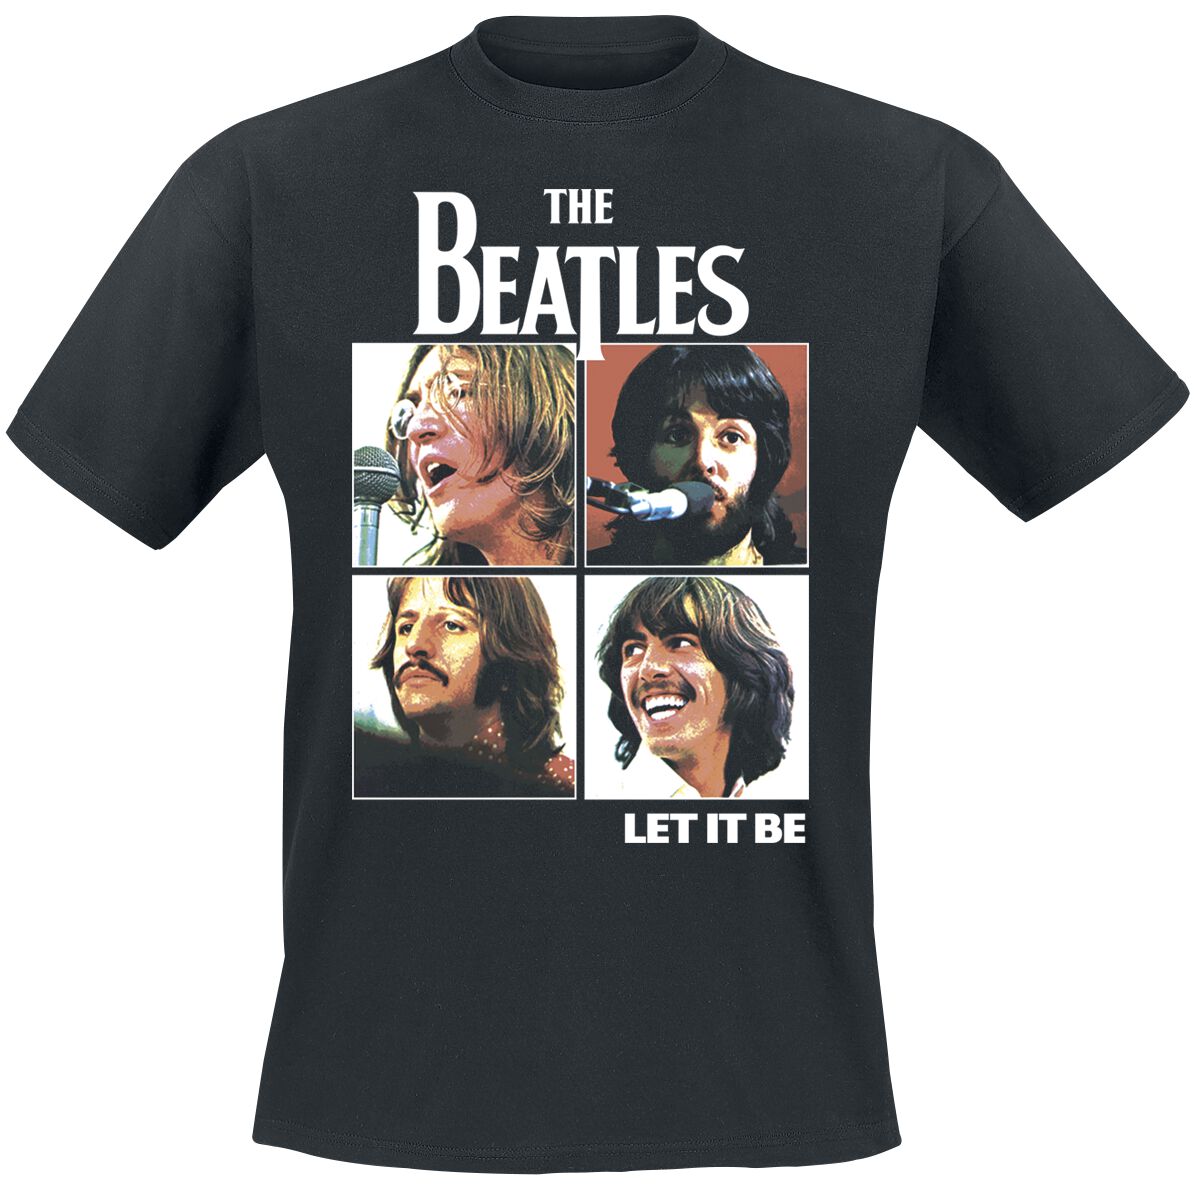 The Beatles T-Shirt - Let it be - S bis 3XL - für Männer - Größe S - schwarz  - Lizenziertes Merchandise!